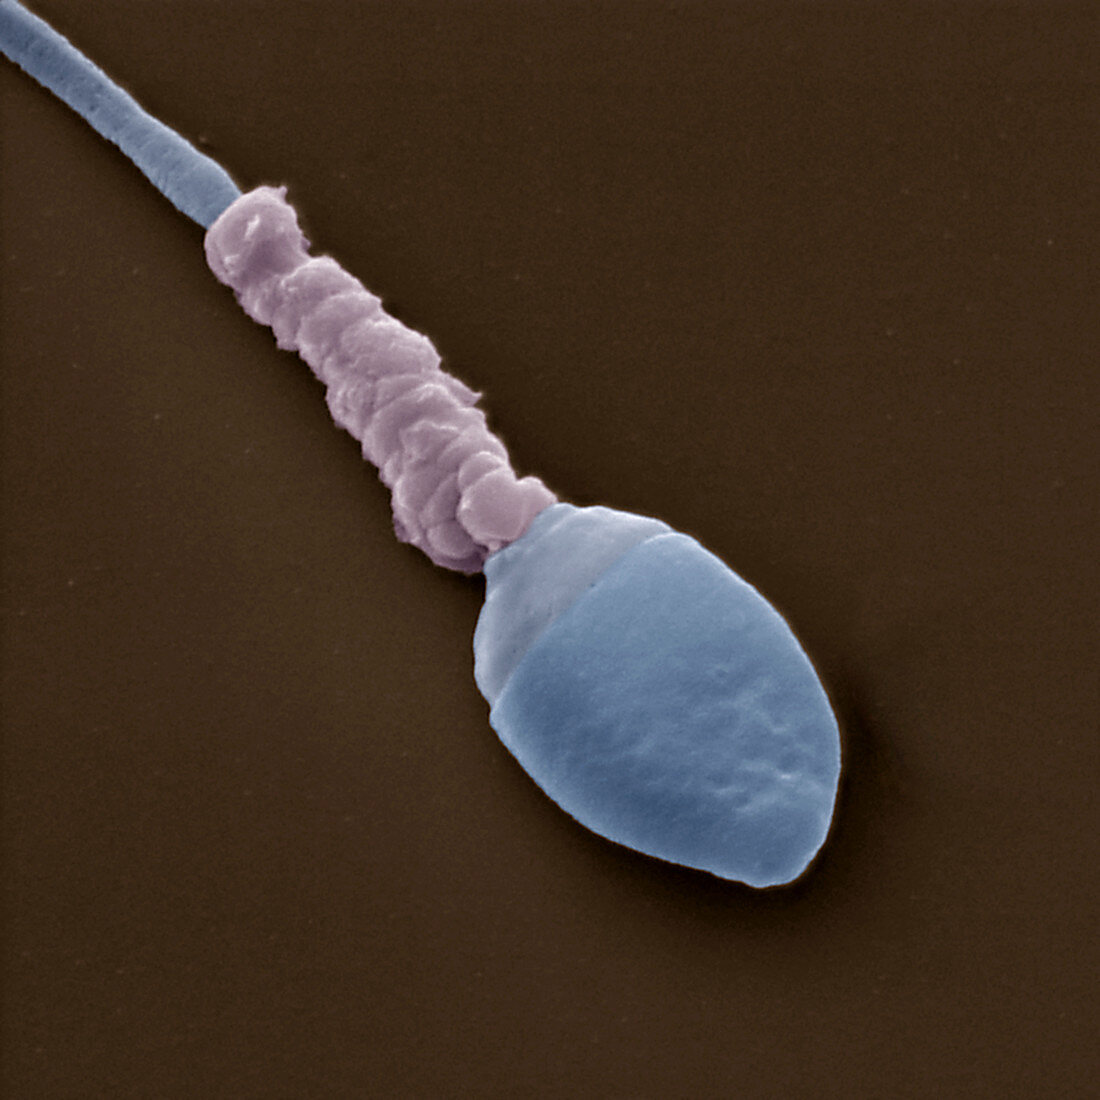 Sperm 12000x - Medizin, Mensch, Spermium